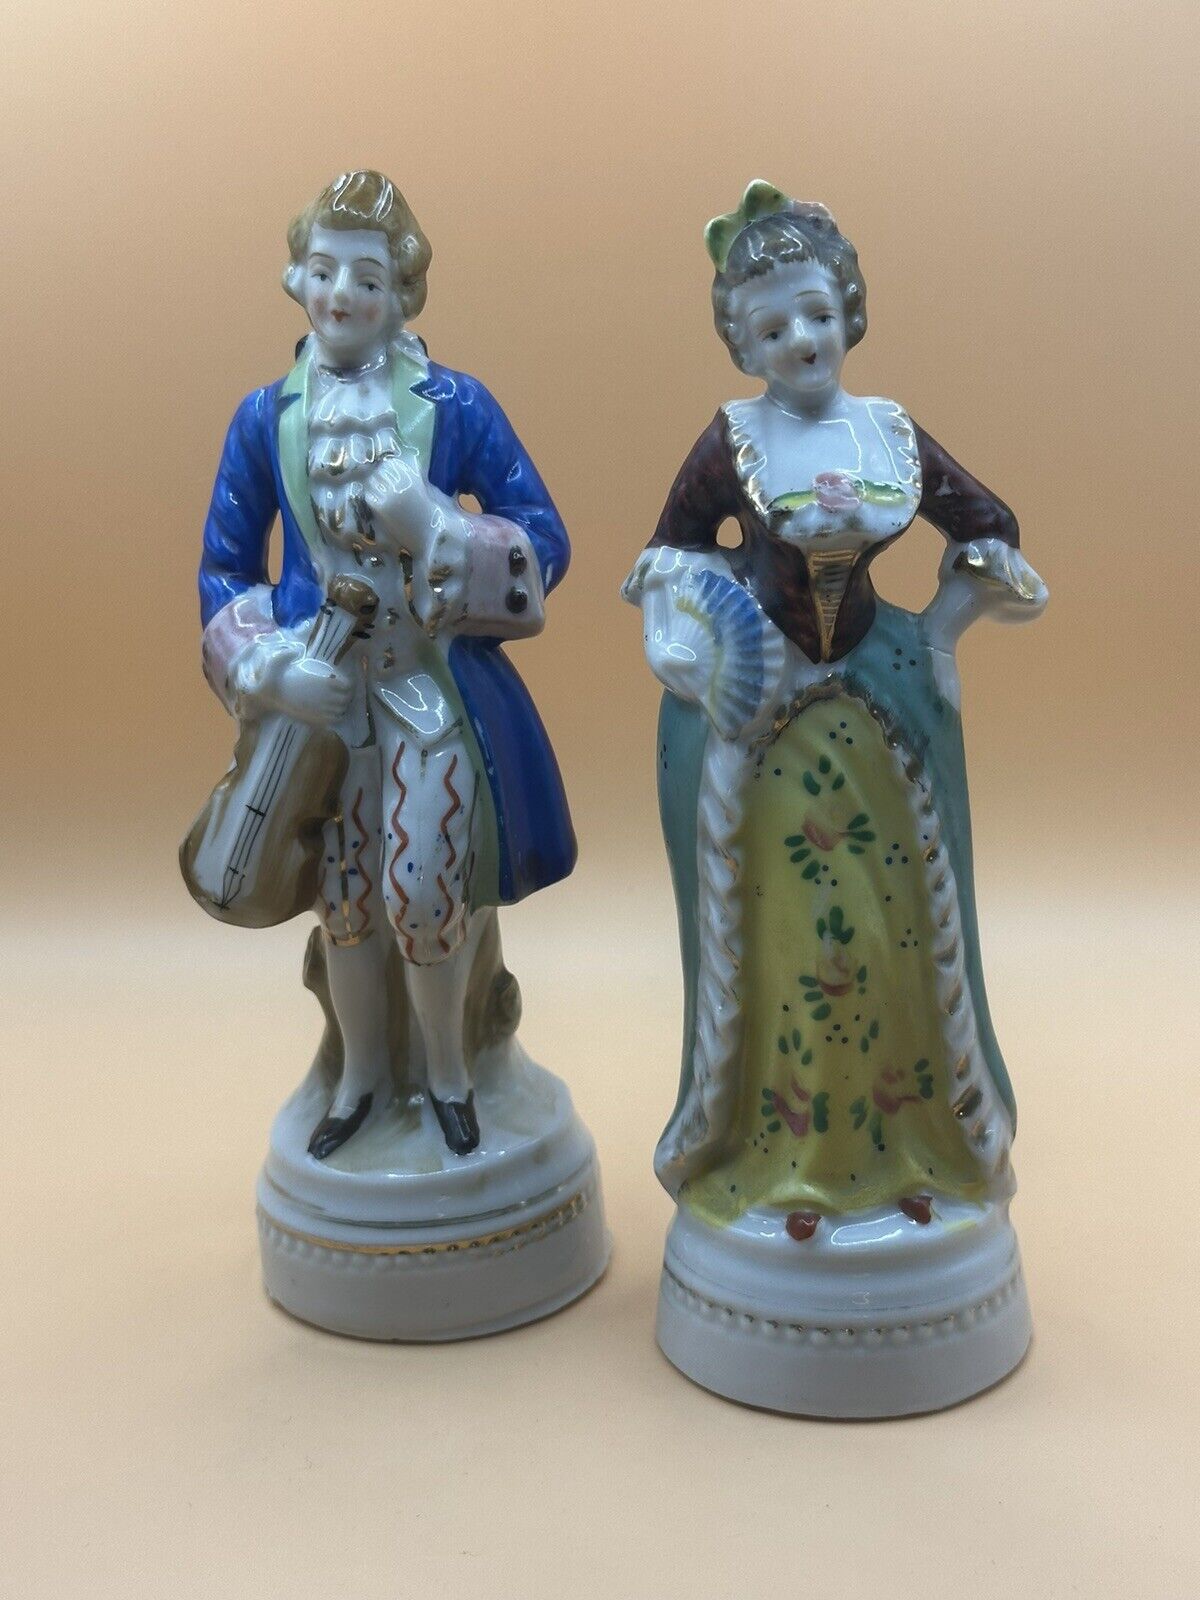 Vintage Porcelain Colonial Victorian Man & Woman Couple Figurines JAPAN  6”